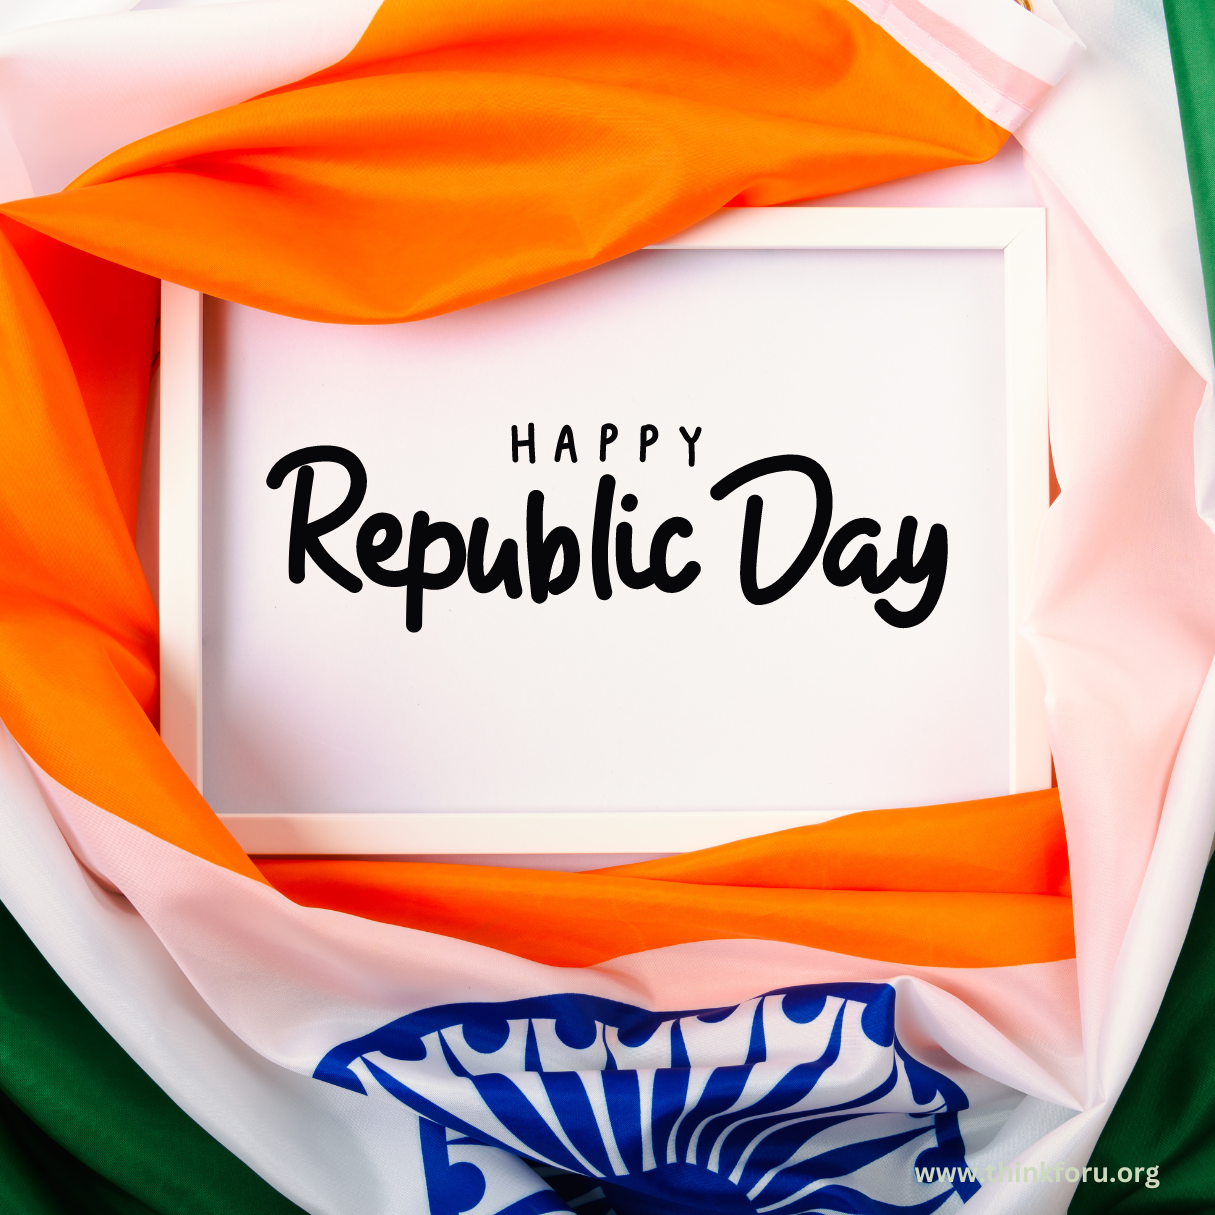 happy republic day images,happy republic day images download,happy republic day images hd,26 january happy republic day images